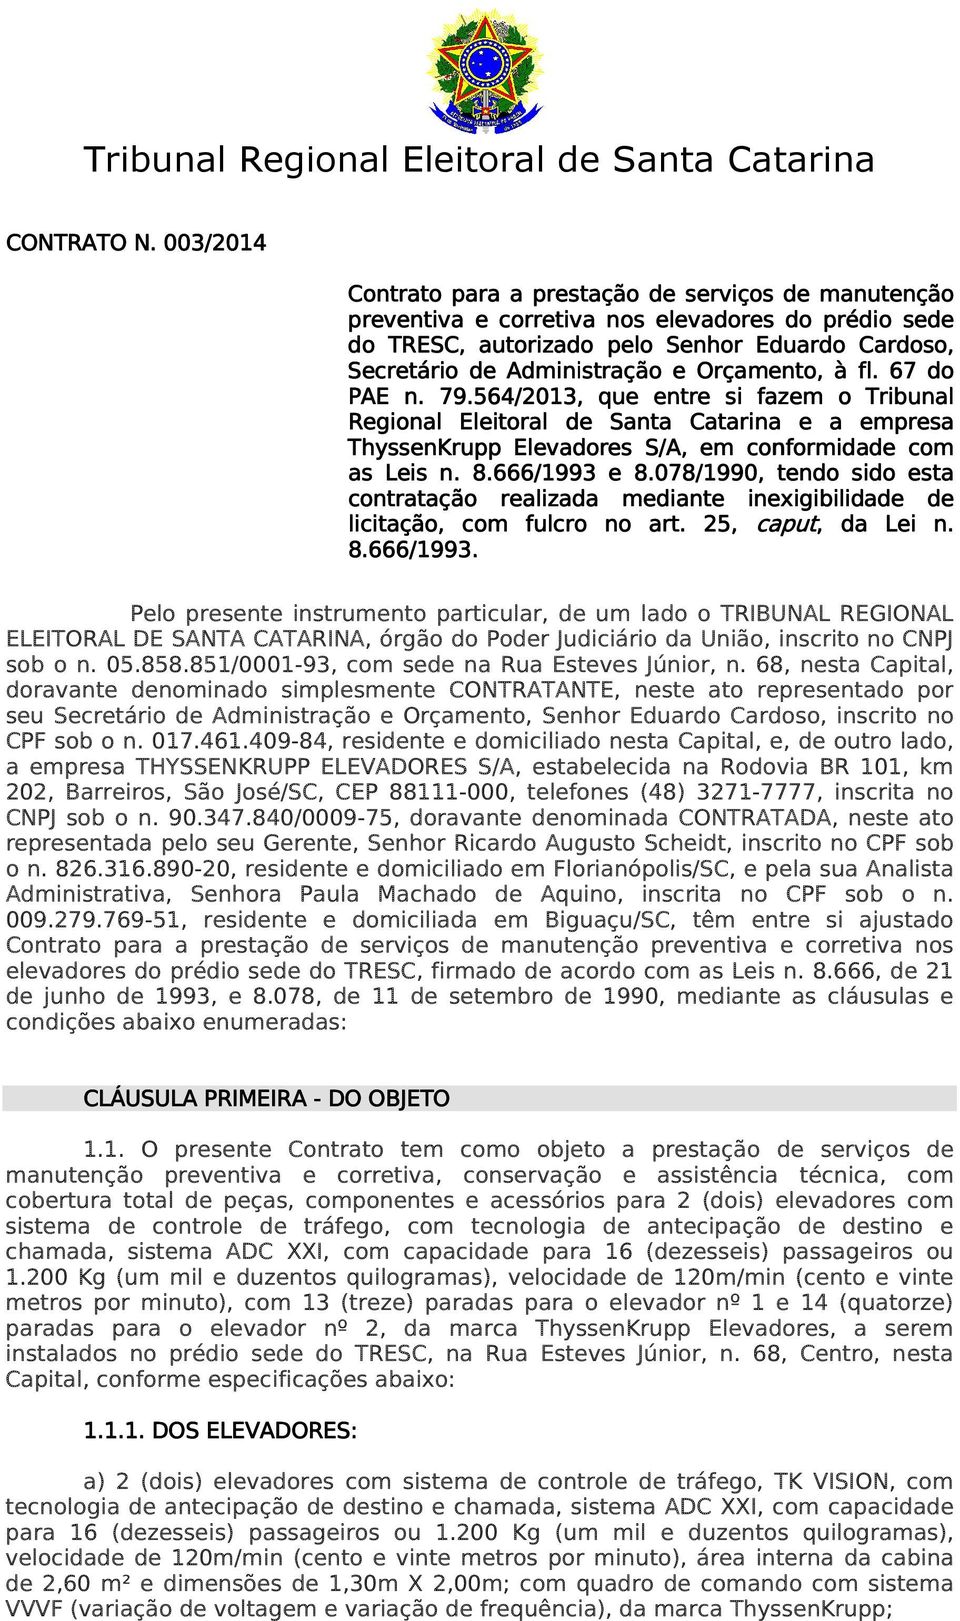 Orçamento, à fl. 67 do PAE n. 79.564/2013,, que entre si fazem o Tribunal Regional Eleitoral de Santa Catarina e a empresa ThyssenKrupp Elevadores S/A, em conformidade com as Leis n. 8.666/1993 e 8.